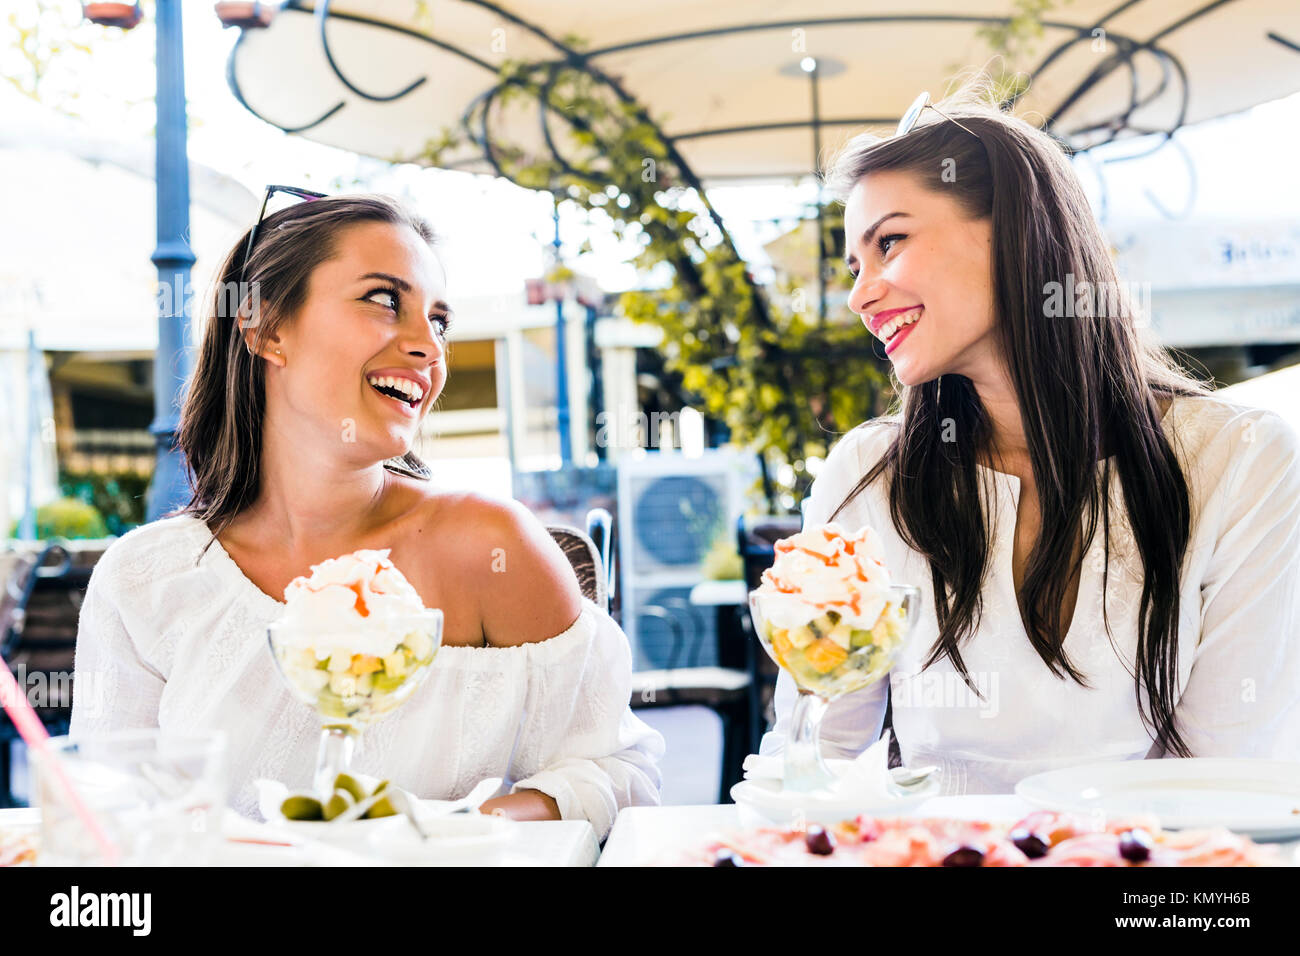 Zwei schöne junge Frauen lächelnd und mit einem Obstsalat in Einem Stockfoto